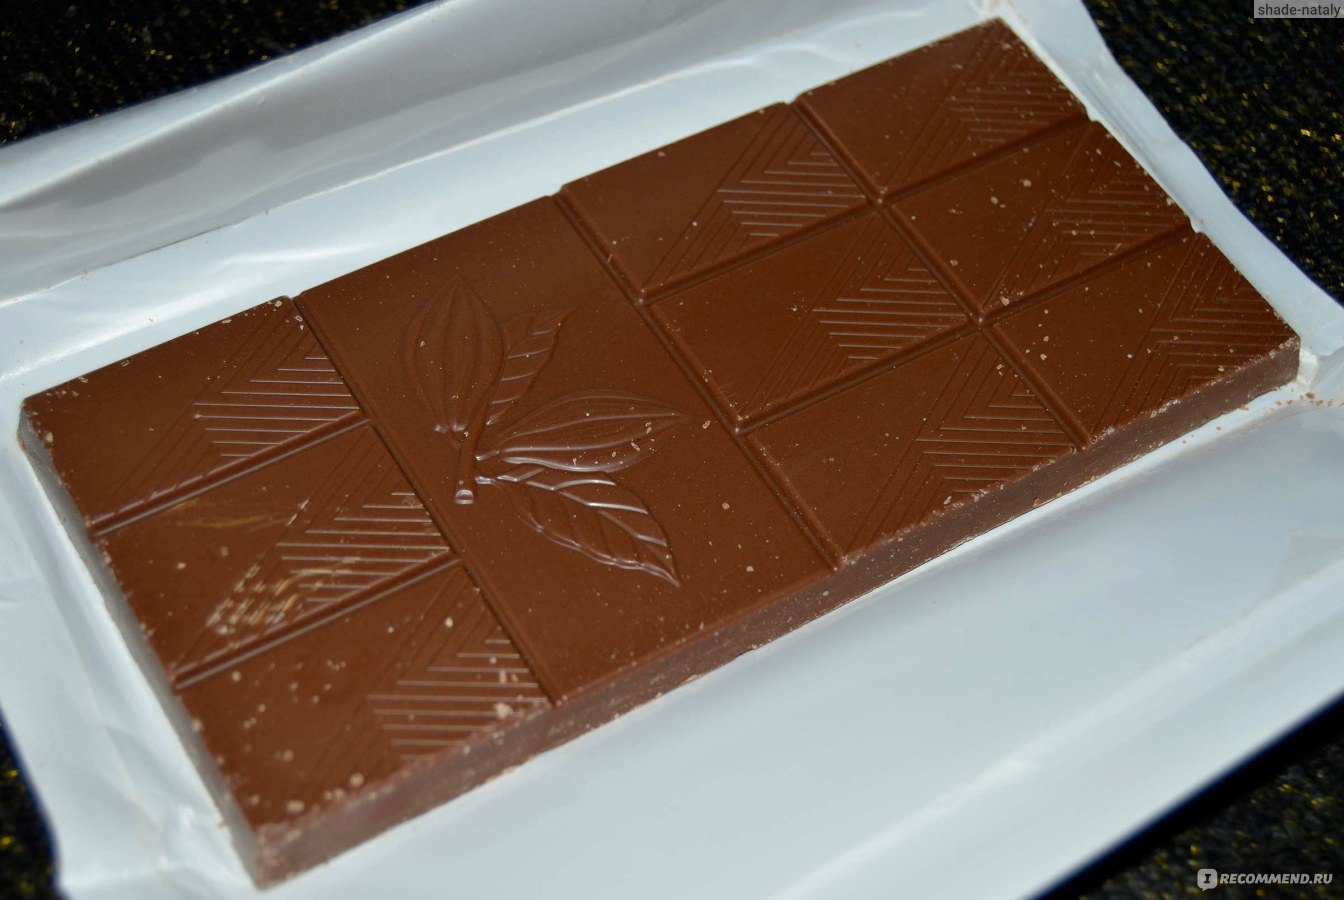 Молочный шоколад Яшкино Специально отобранные какао-бобы фото